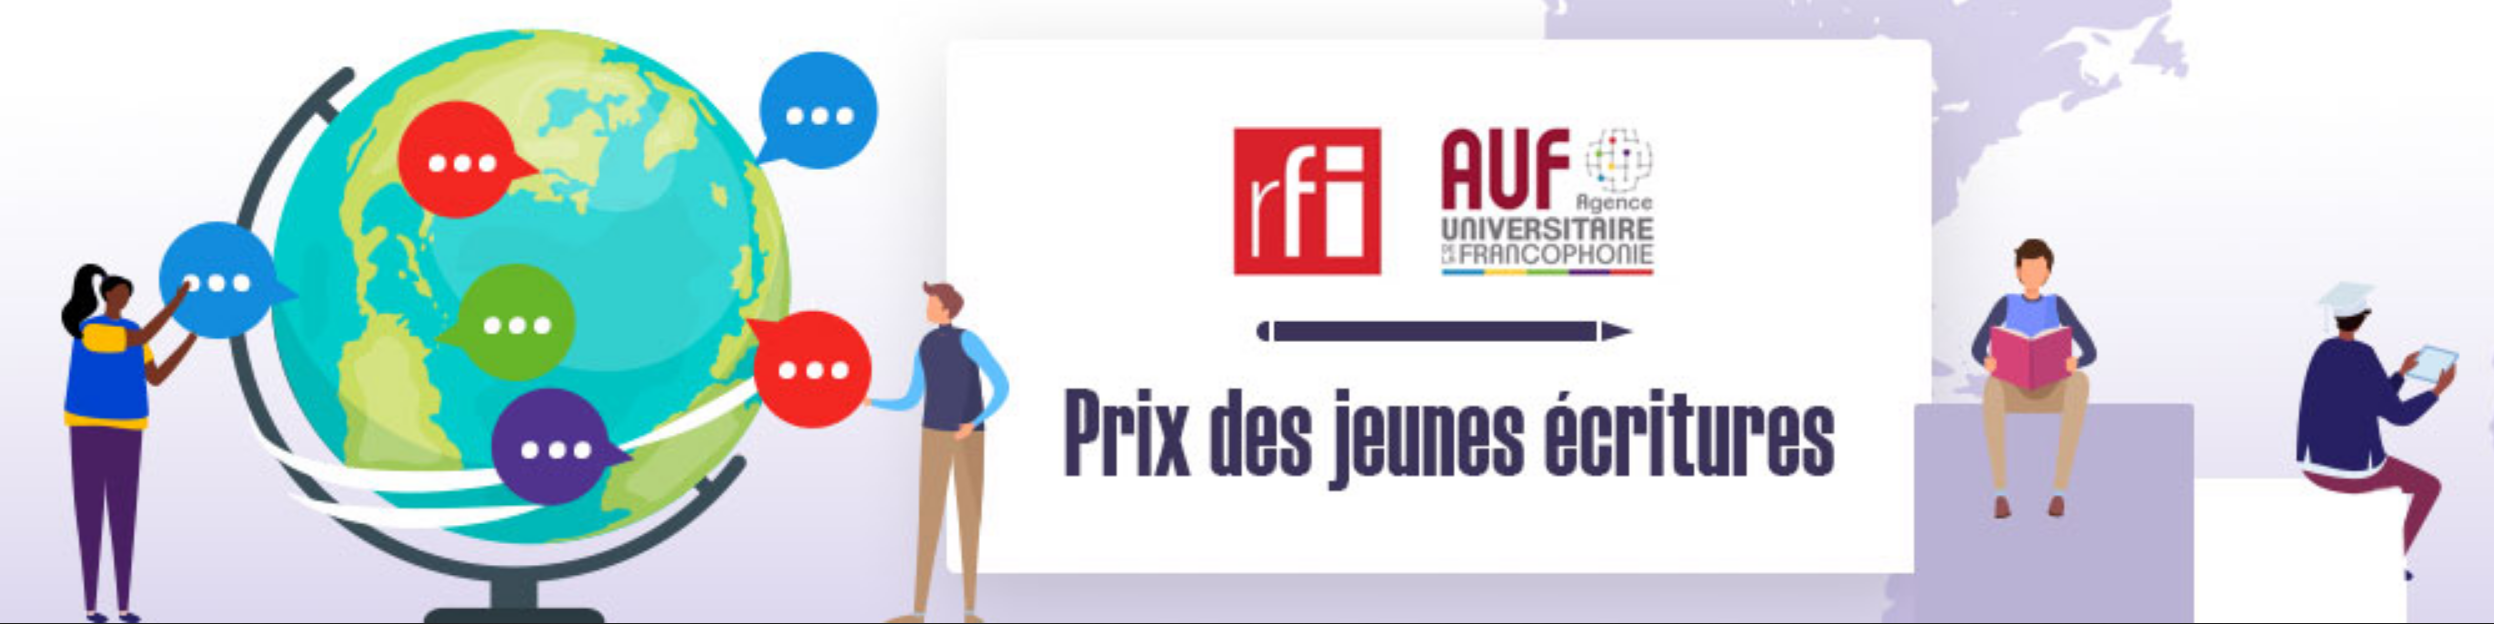 Première édition du "Prix des Jeunes Écritures RFI-AUF"